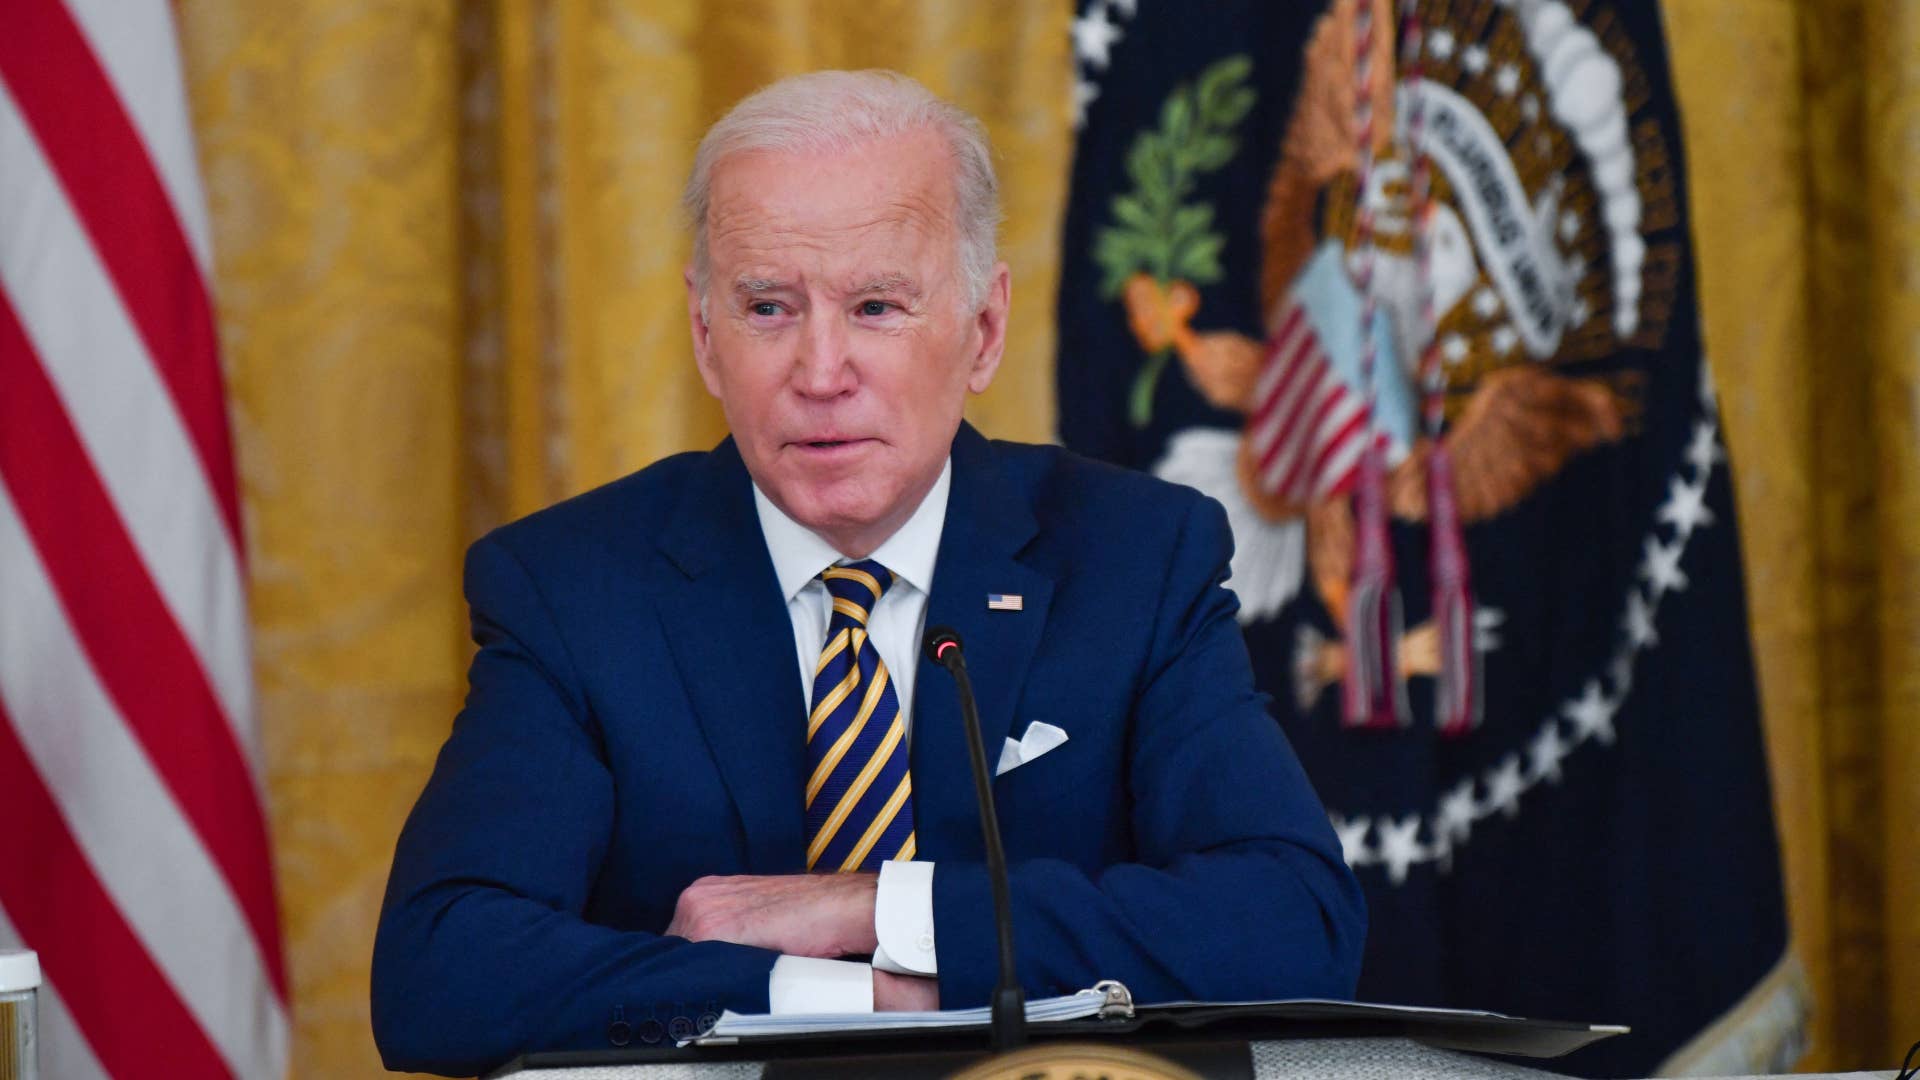 Joe Biden is pictured wearing a suit